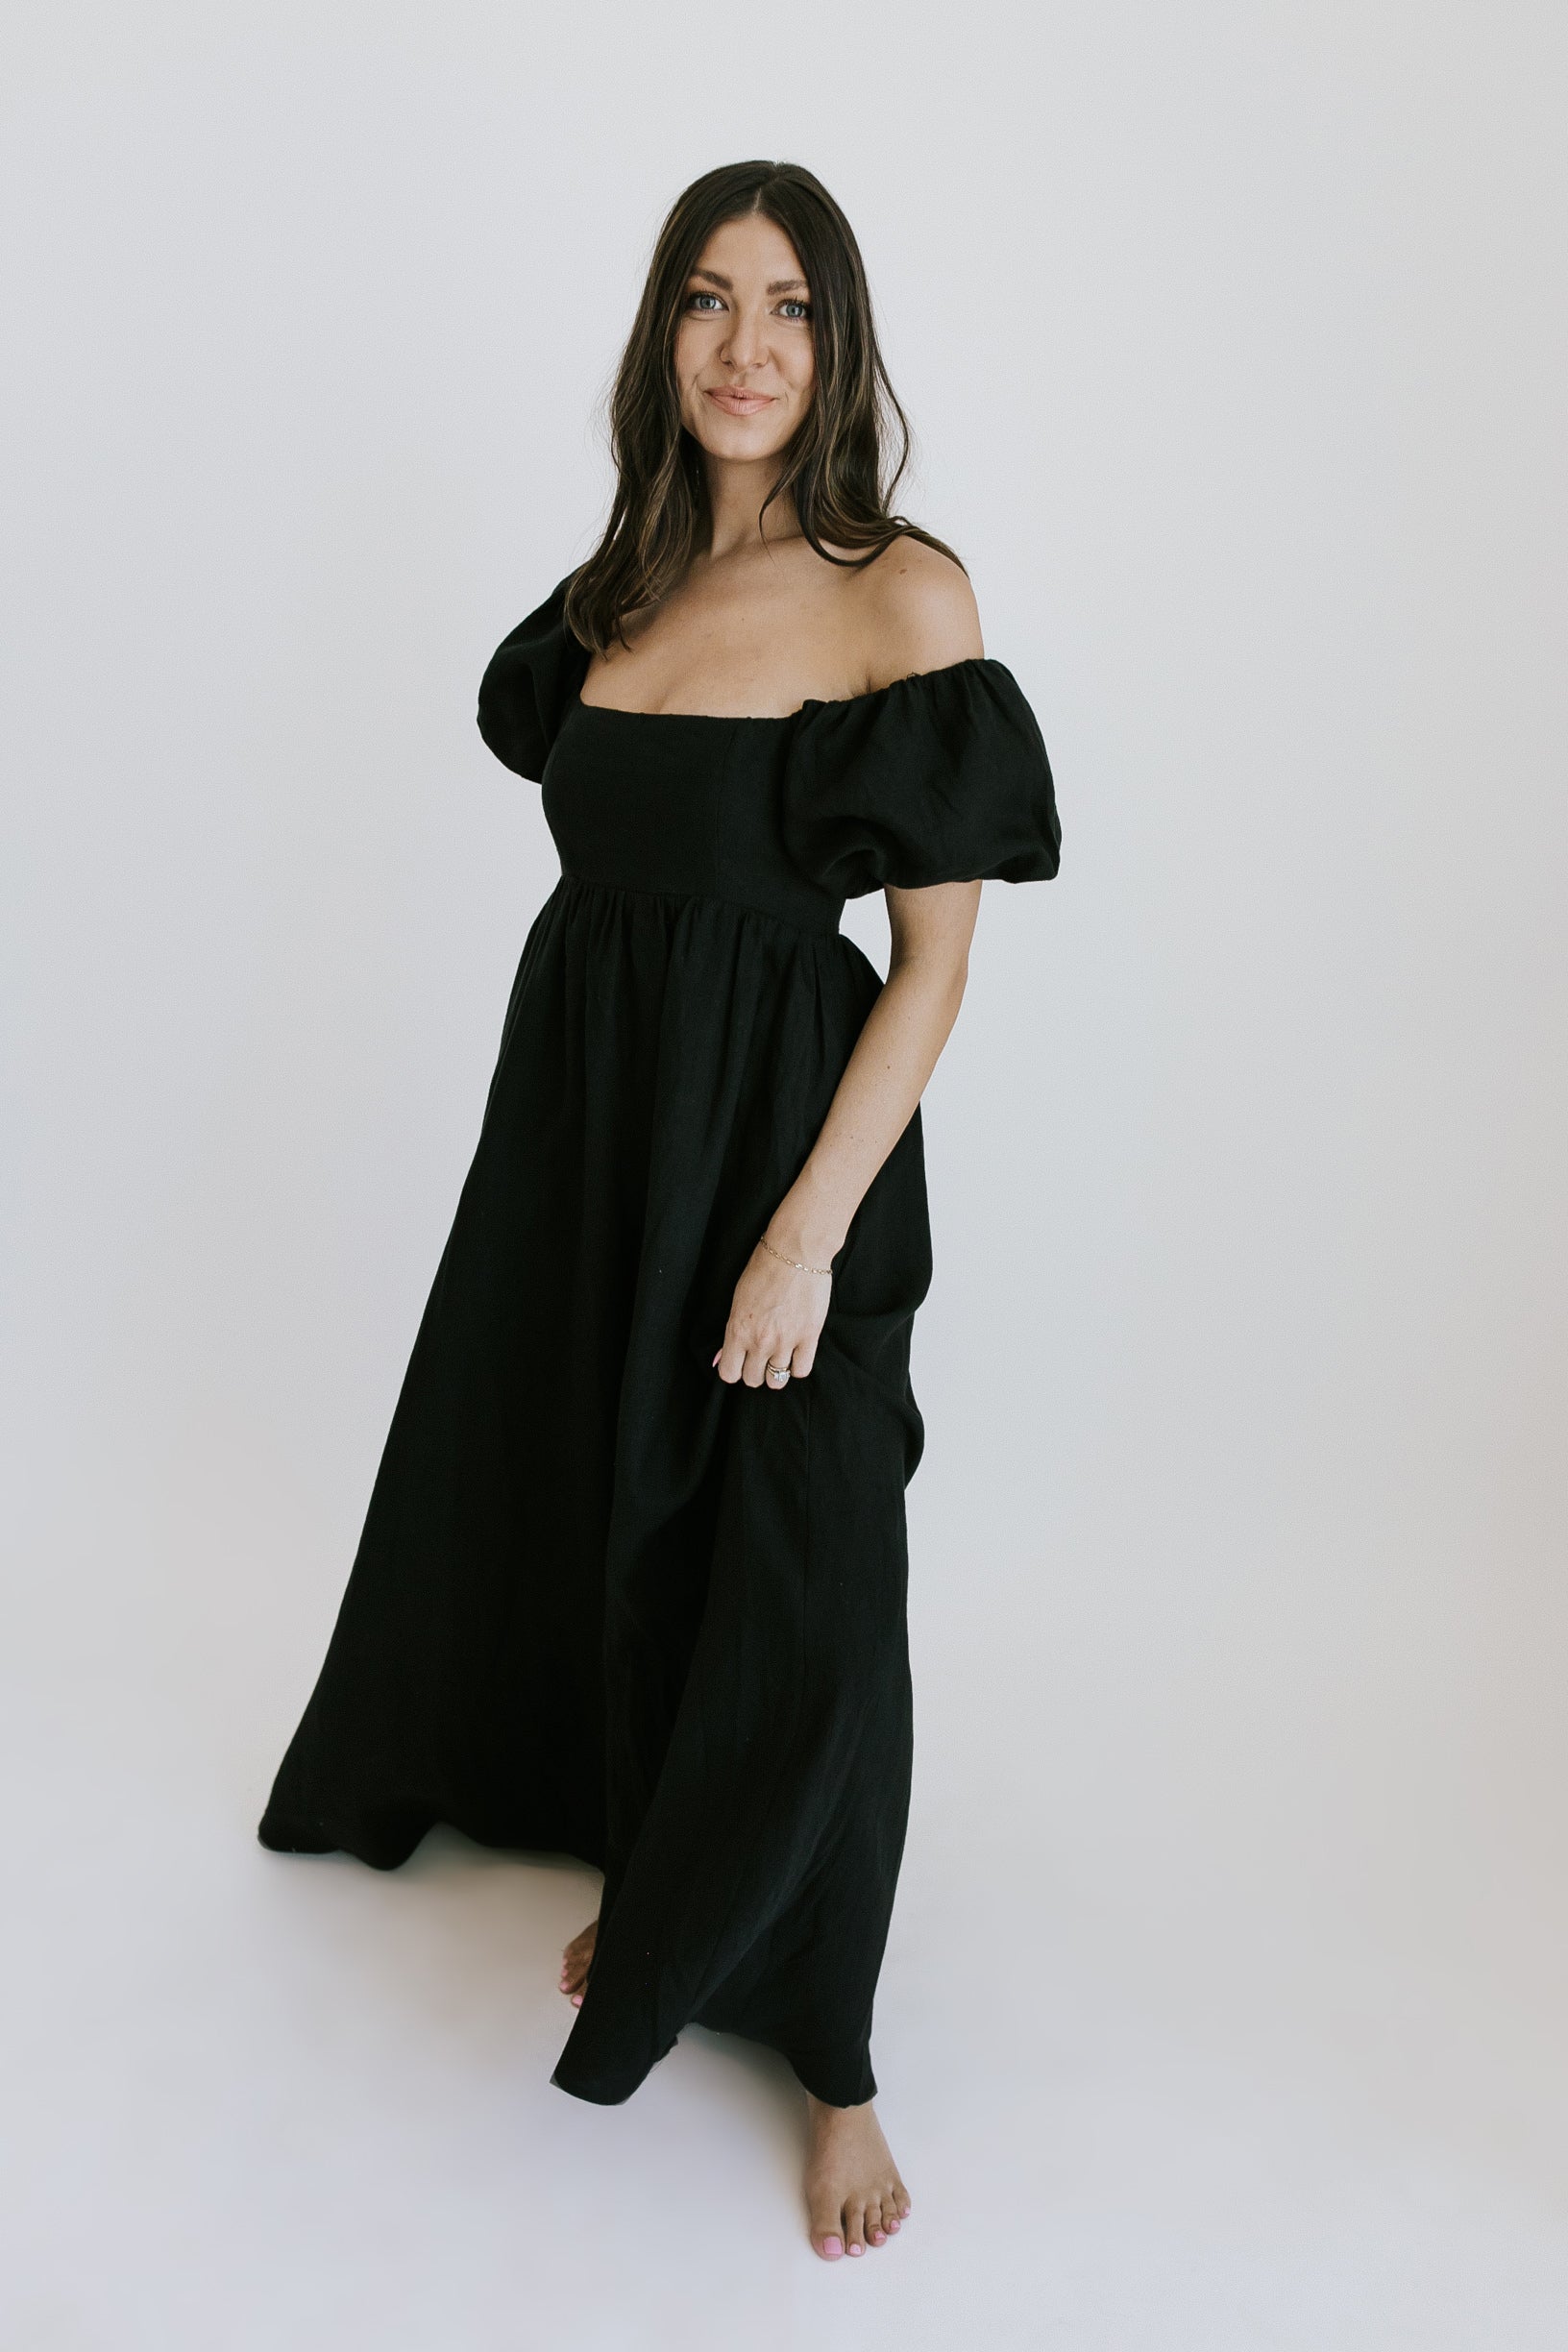 Page Turner Maxi Dress - Black